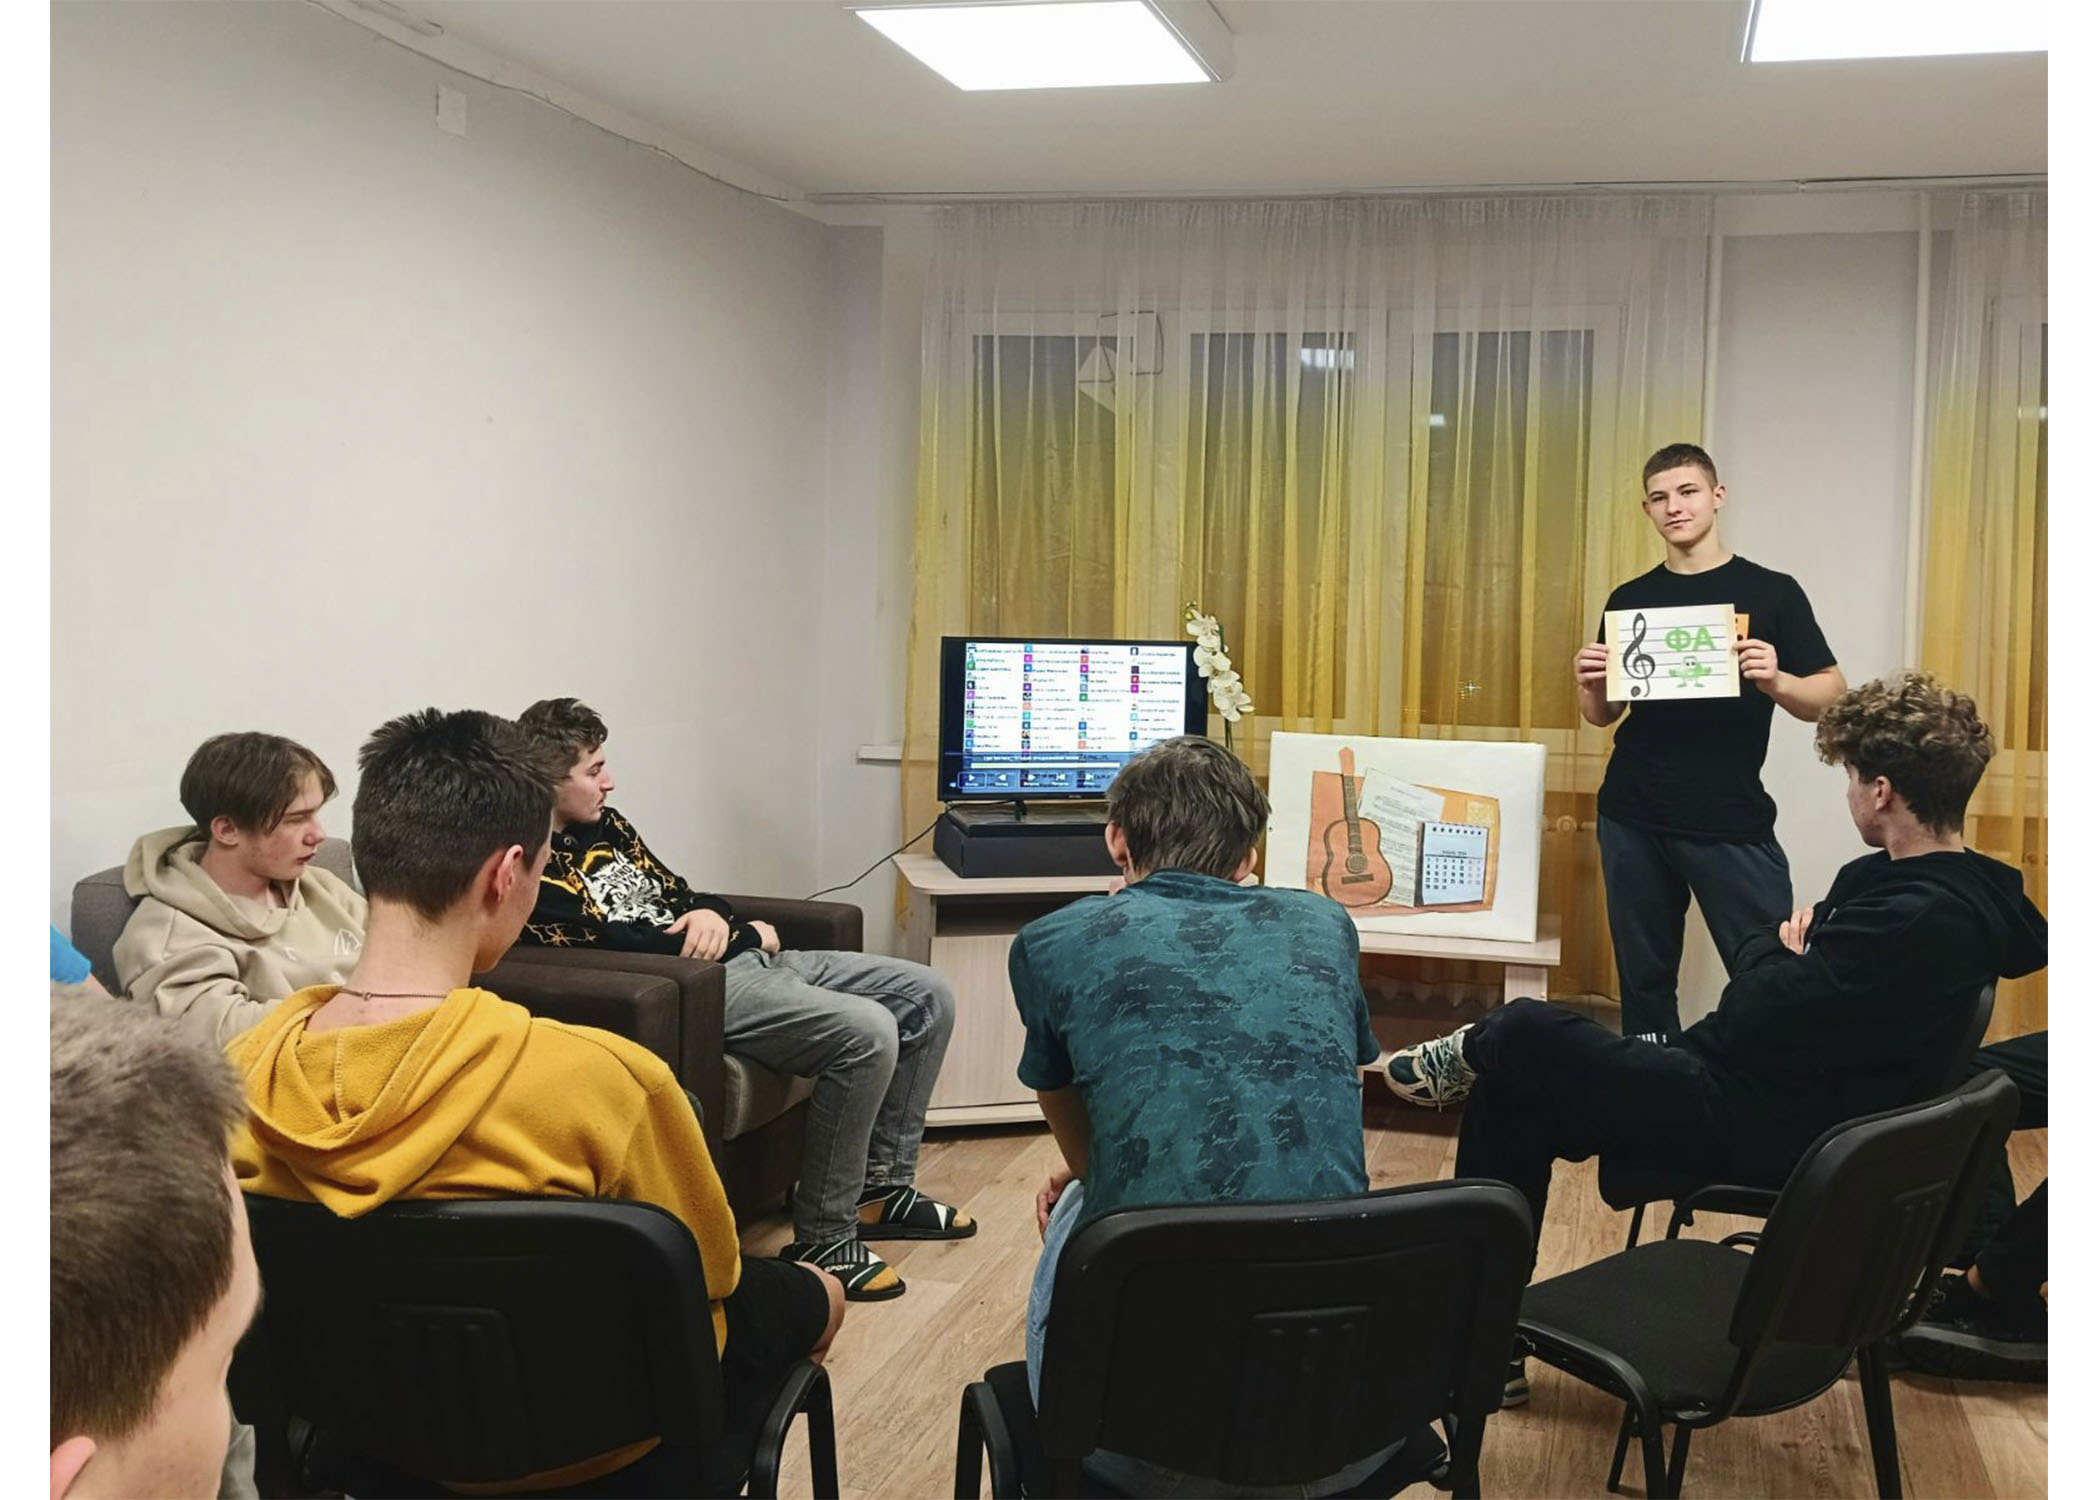 31 января в общежитии колледжа прошла развлекательная программа "Музыкальный калейдоскоп". 